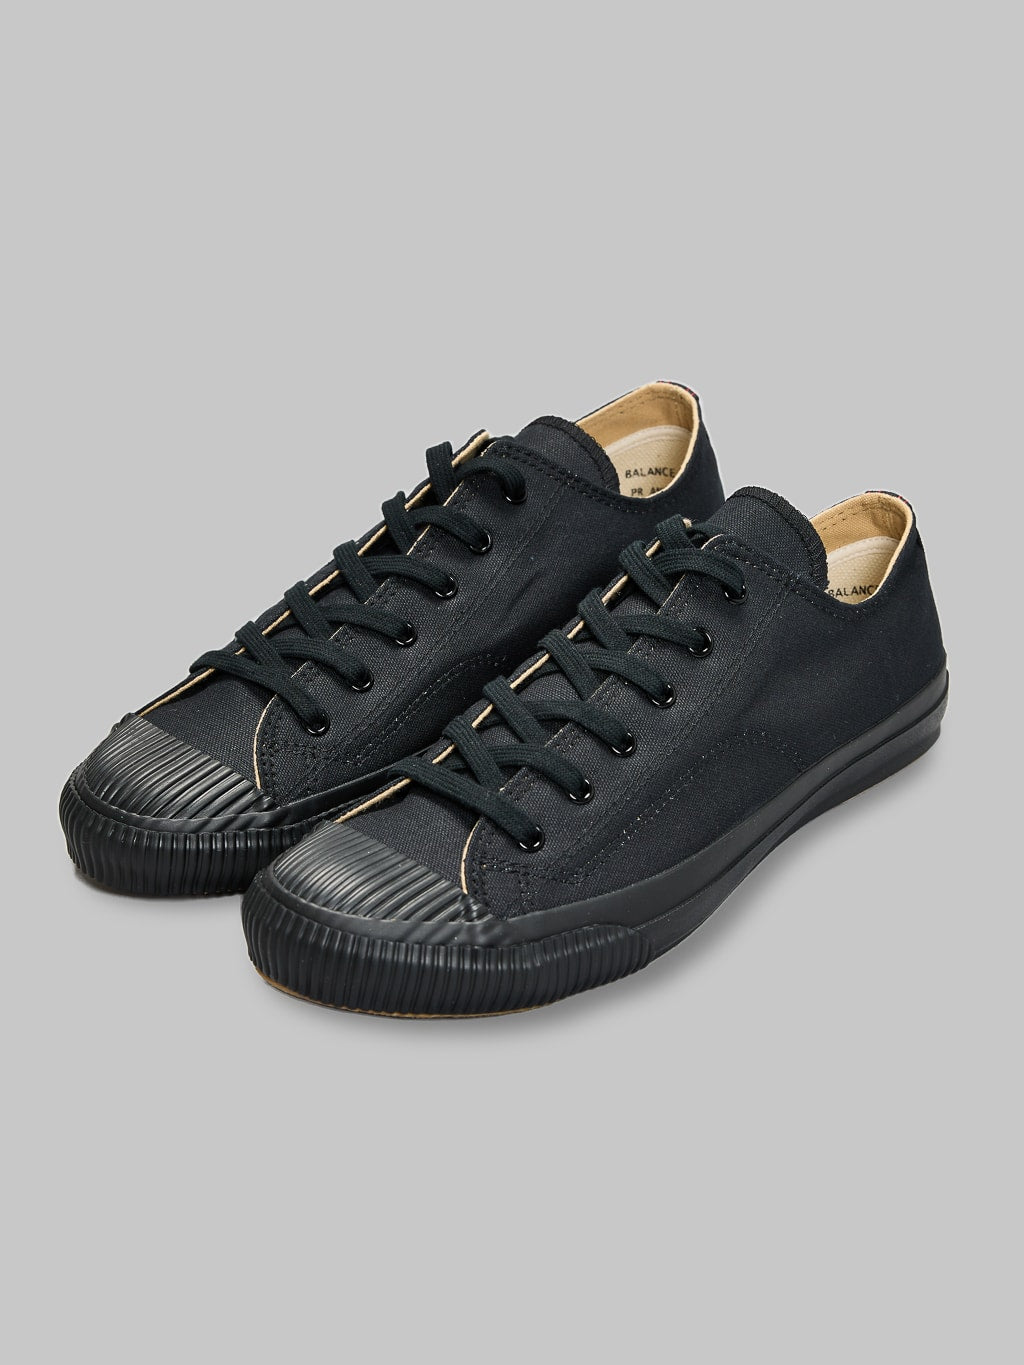 Pras shellcap low sneakers kuro black craftsmanship